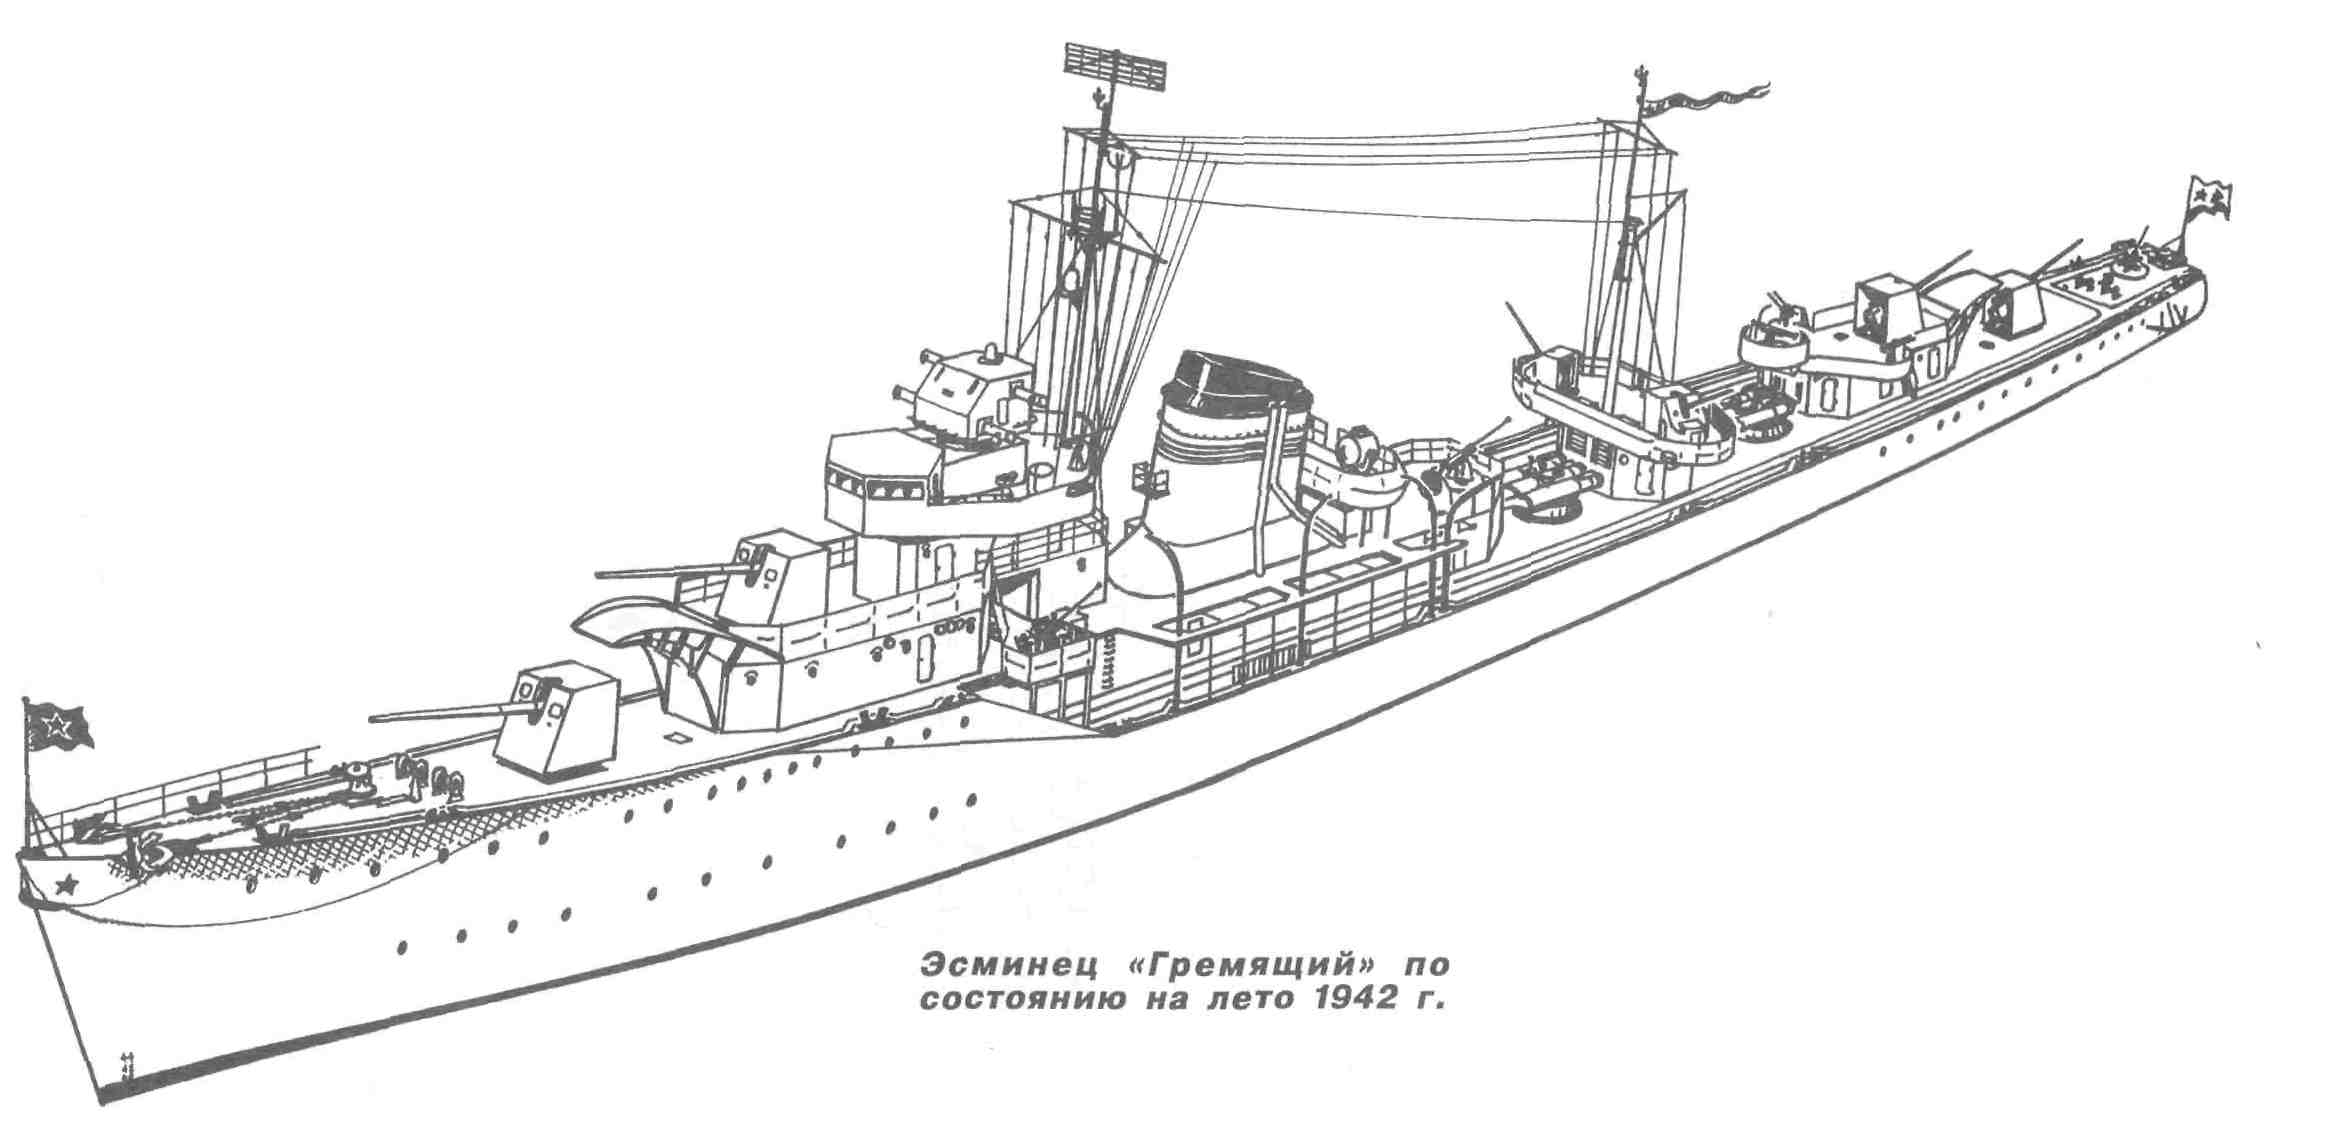 17吨黄金换来的驱逐舰开山鼻祖 初代四大金刚 中国07型驱逐舰